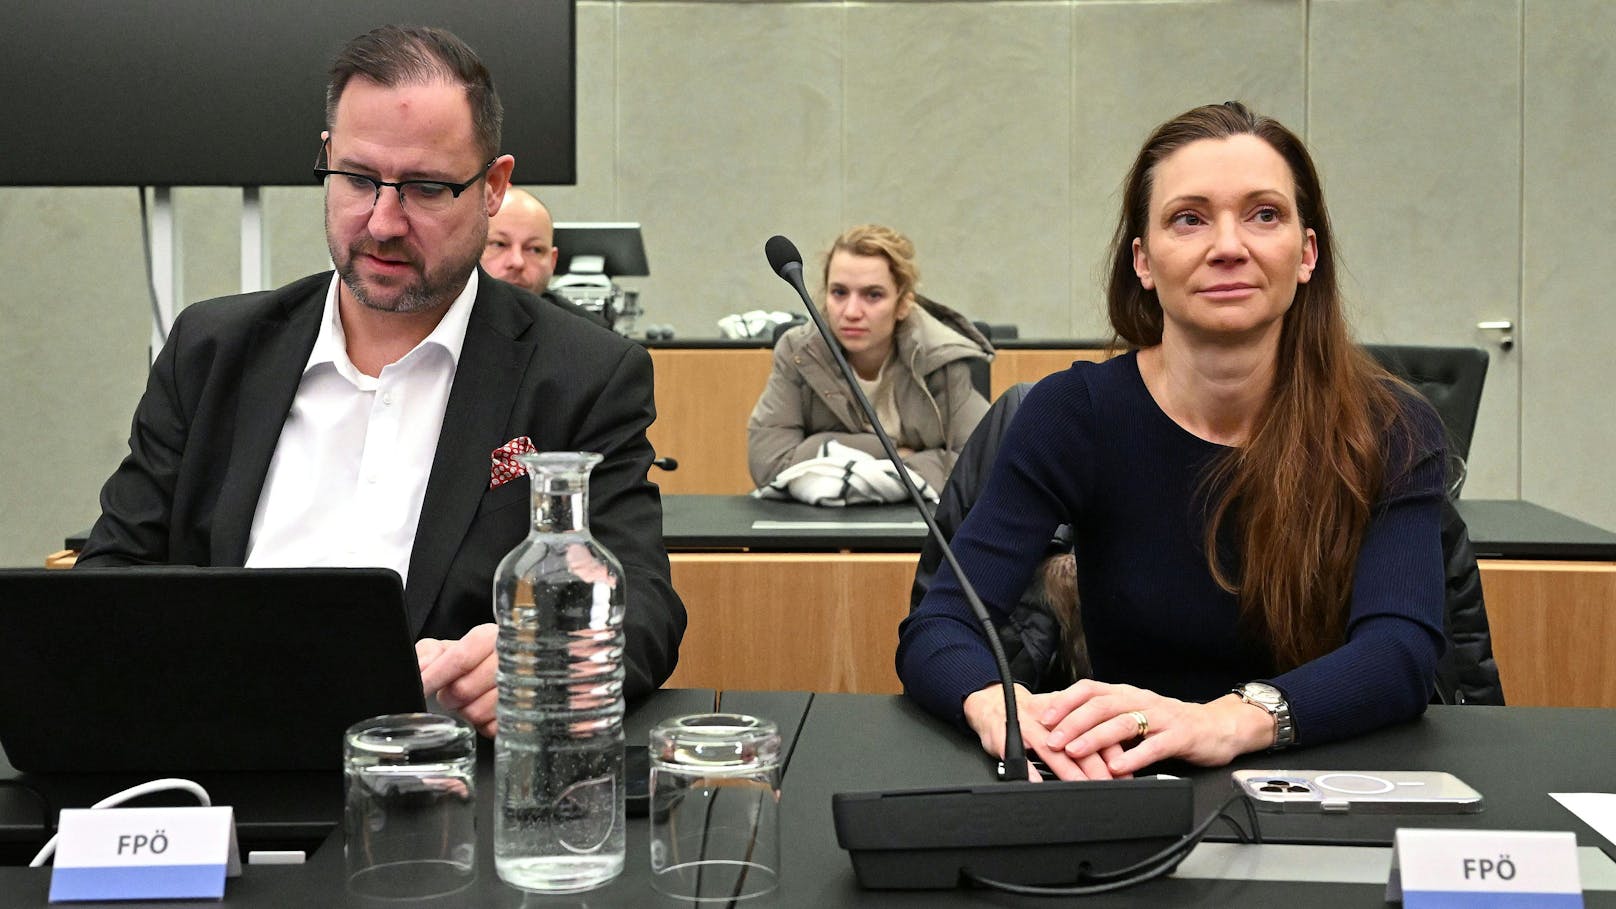 <strong>Christian Hafenecker</strong> (FPÖ) und <strong>Susanne Fürst</strong> (FPÖ) während der Konstituierenden Sitzung des COFAG-U-Ausschusses.